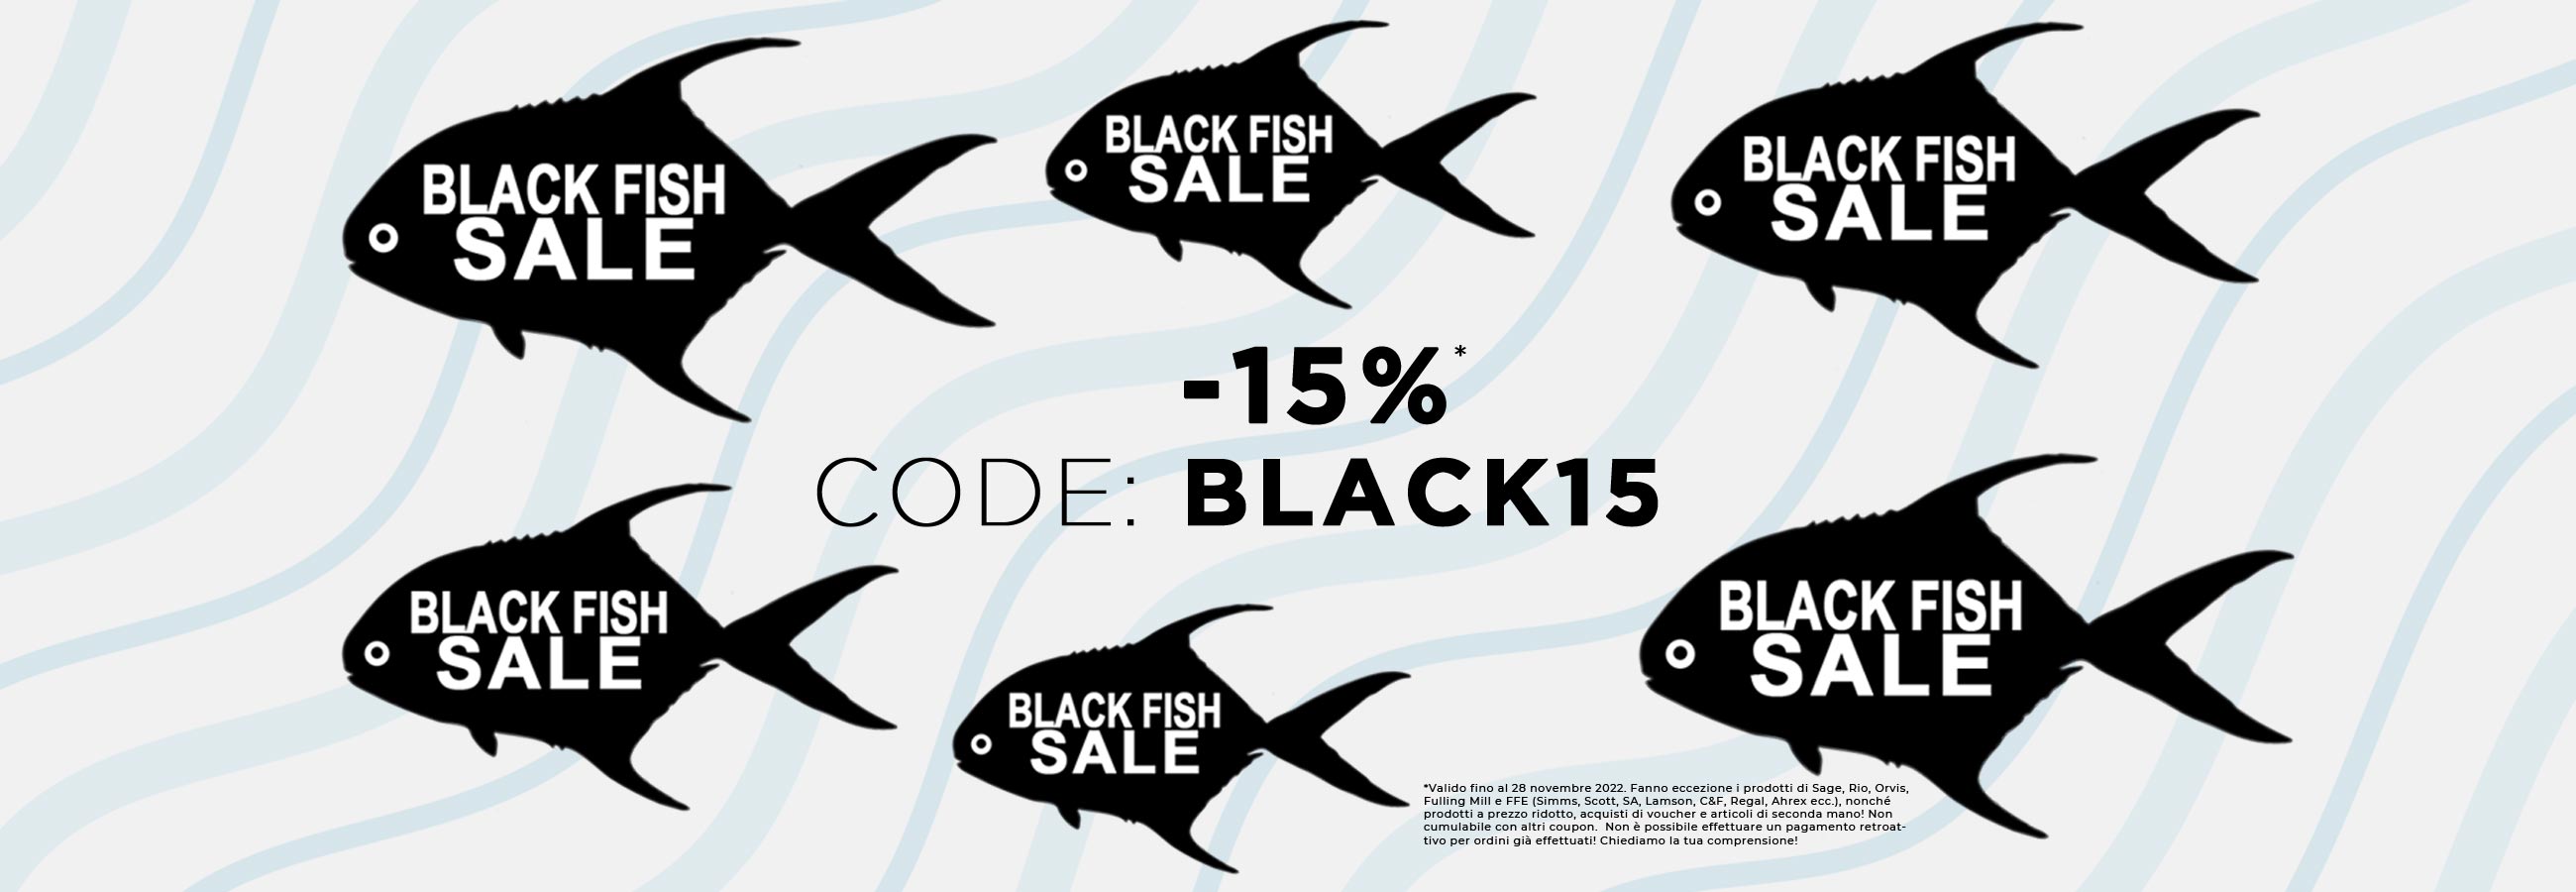 BLACK FISH SALE! Code: BLACK15  Risparmia questo settimana -15% sul tuo acquisto.* Pesca a mosca, Costruzione mosche, Pesca a spinning